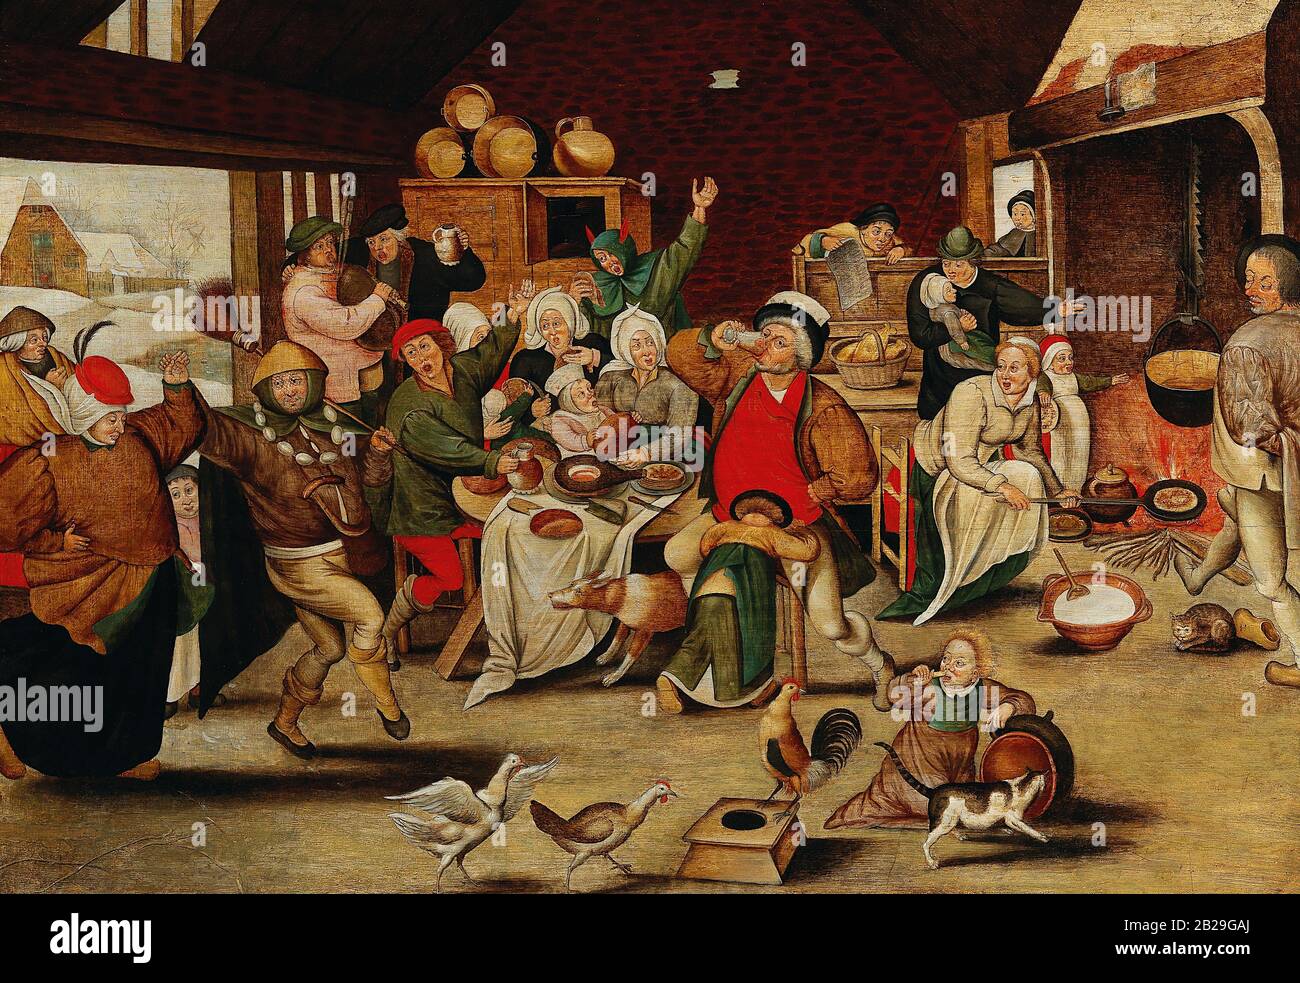 The King Drinks (circa 1610) dipinto di Pieter Bruegel (Brueghel) The Younger (II) - immagine Di Altissima qualità e risoluzione Foto Stock